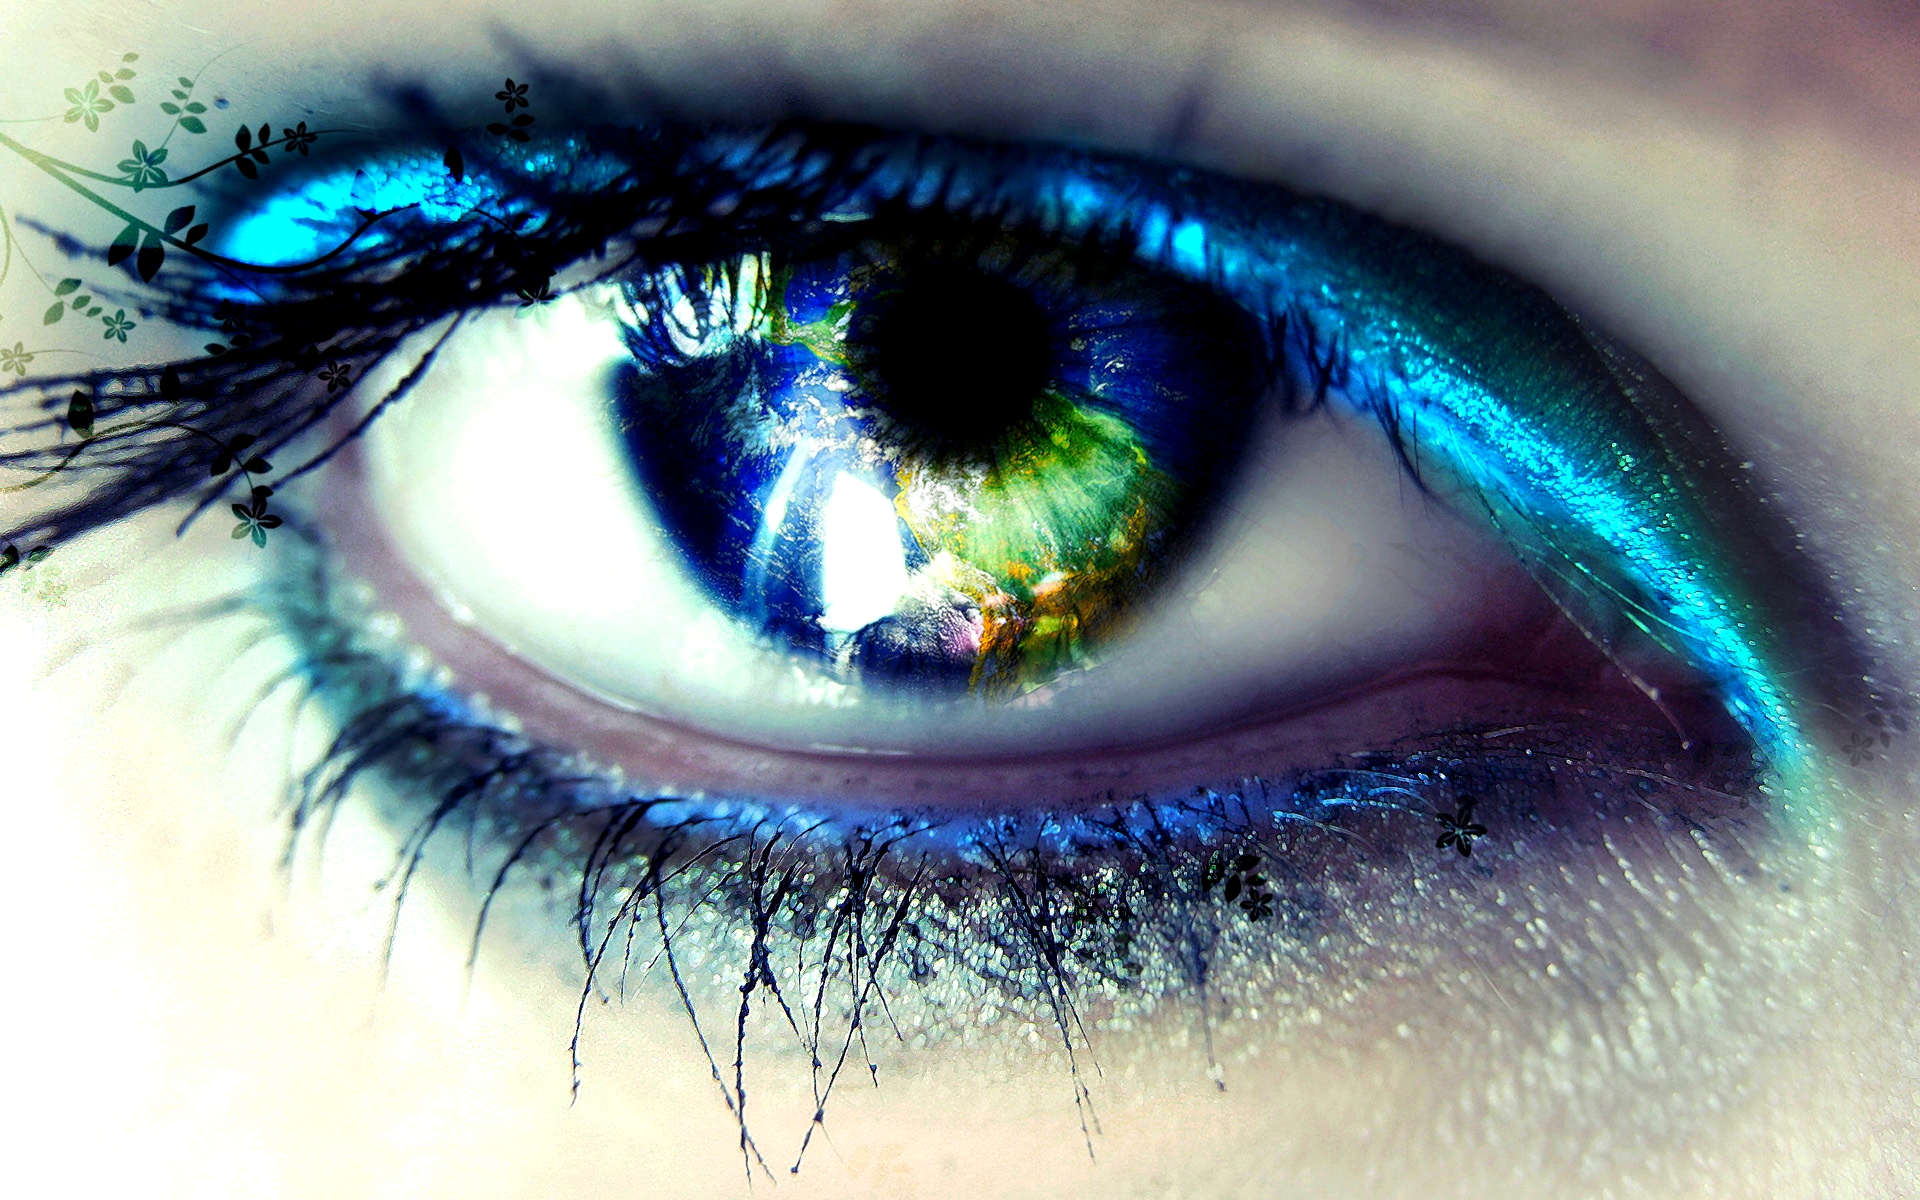 occhi azzurri hd wallpaper,blu,occhio,ciglio,iris,sopracciglio